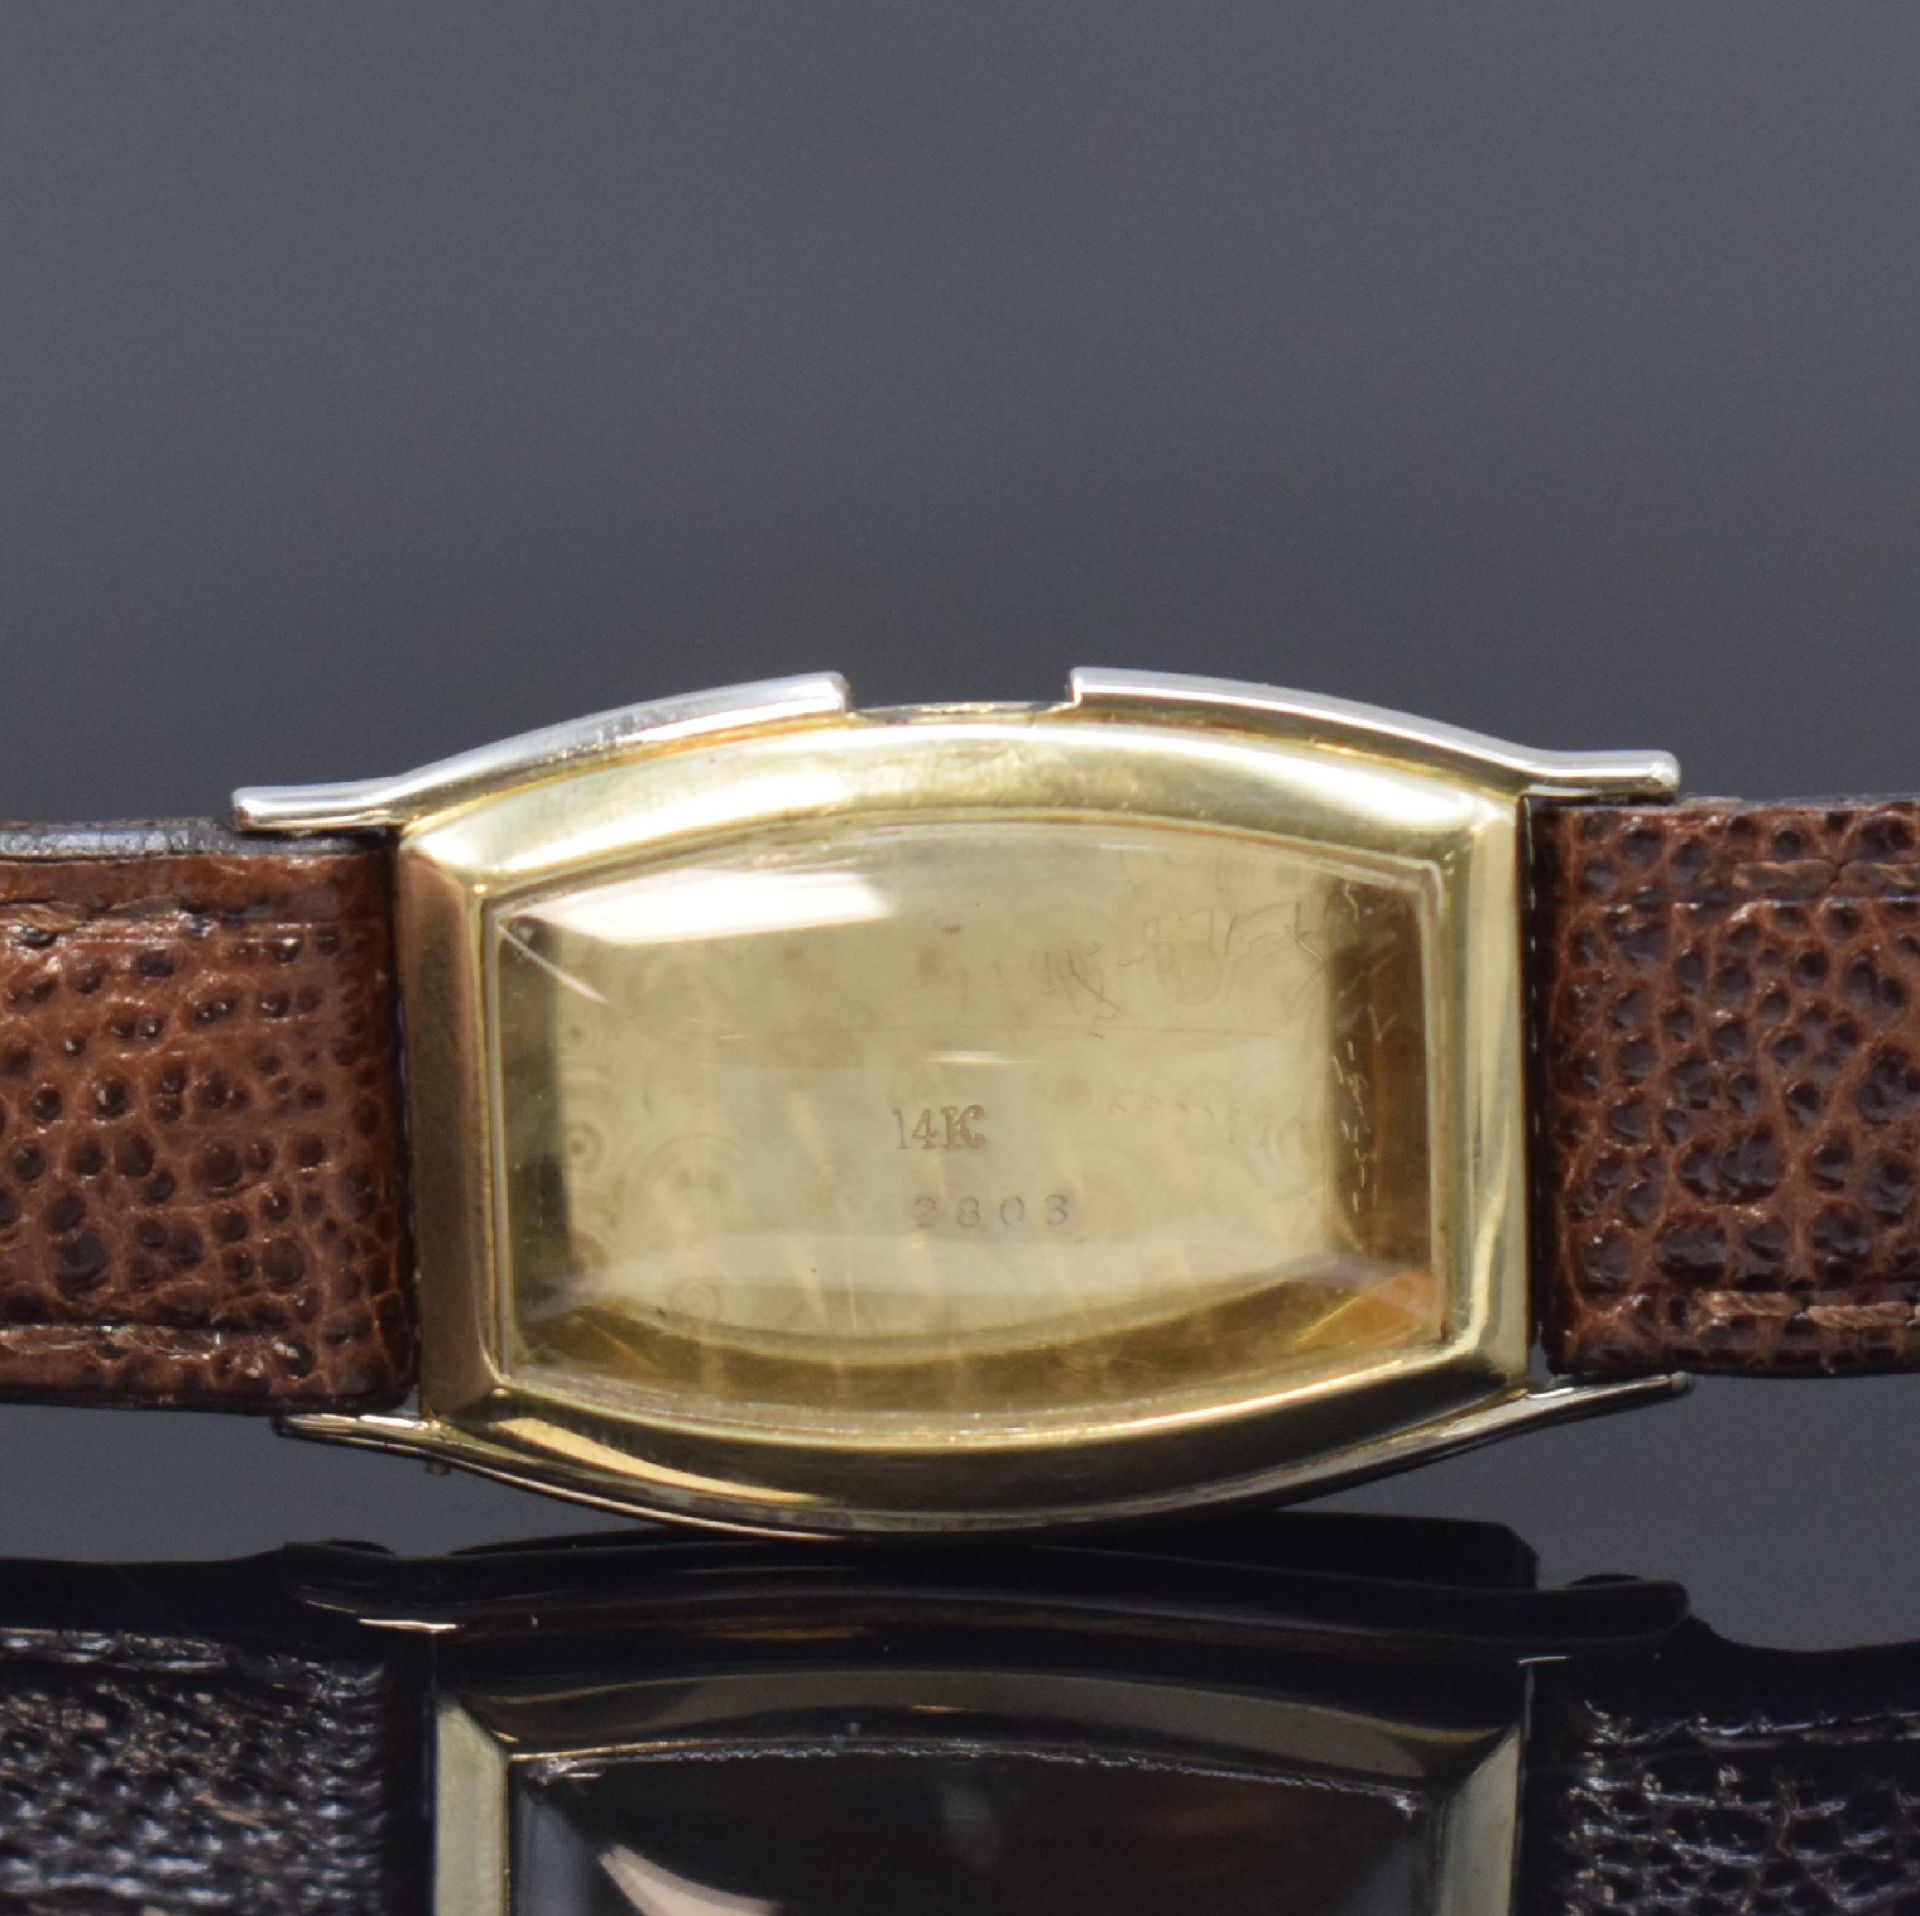 ORMONT WATCH CO Armbanduhr in 14k WG/GG,  Schweiz / USA um - Bild 5 aus 6